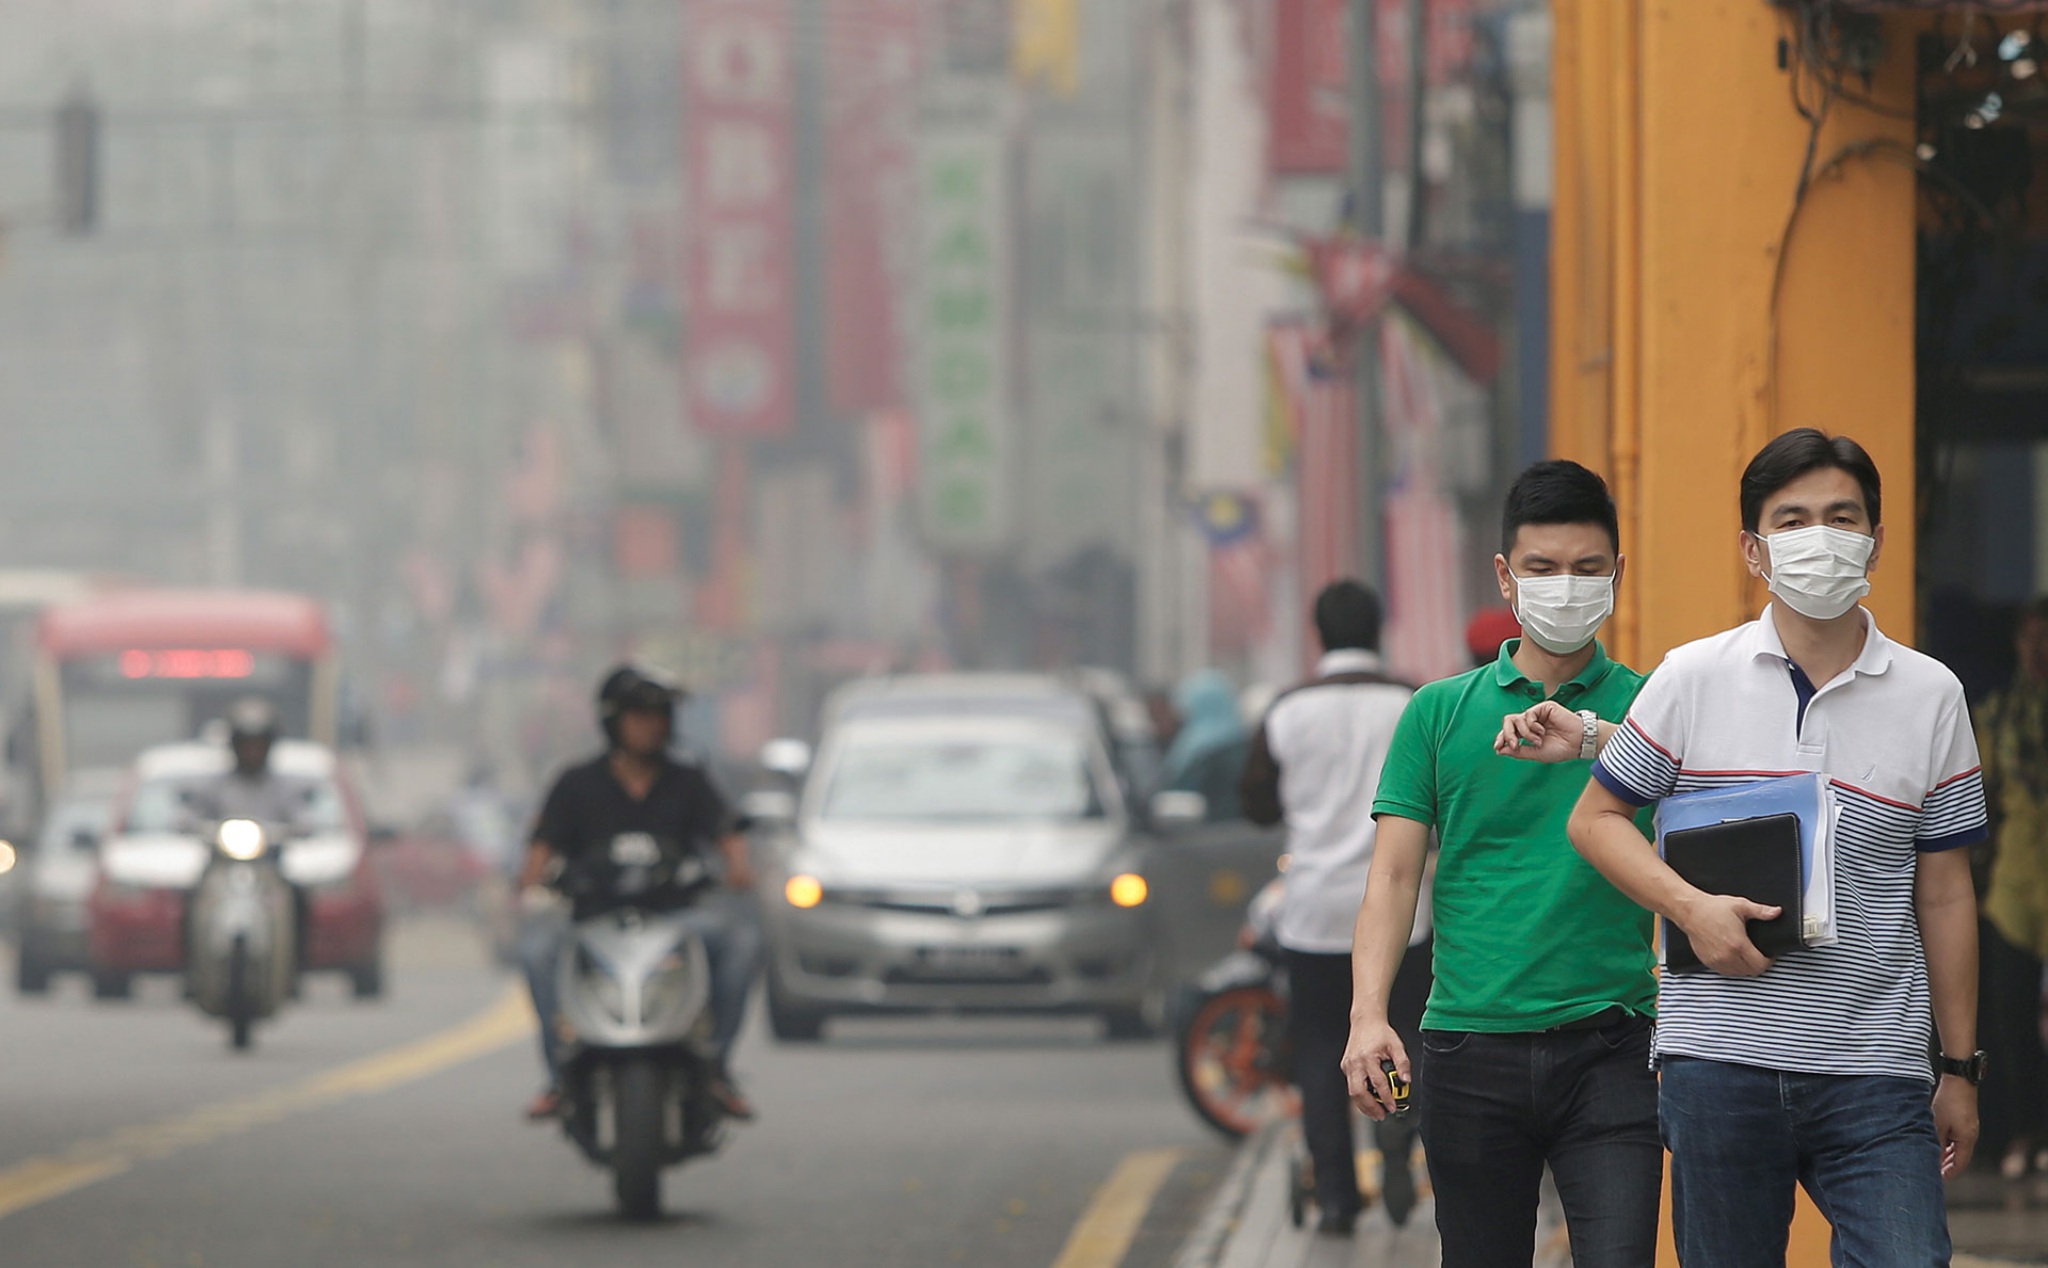 Nghiên cứu mới cho thấy hít thở không khí ô nhiễm quá nhiều sẽ làm chúng ta "ngu" đi